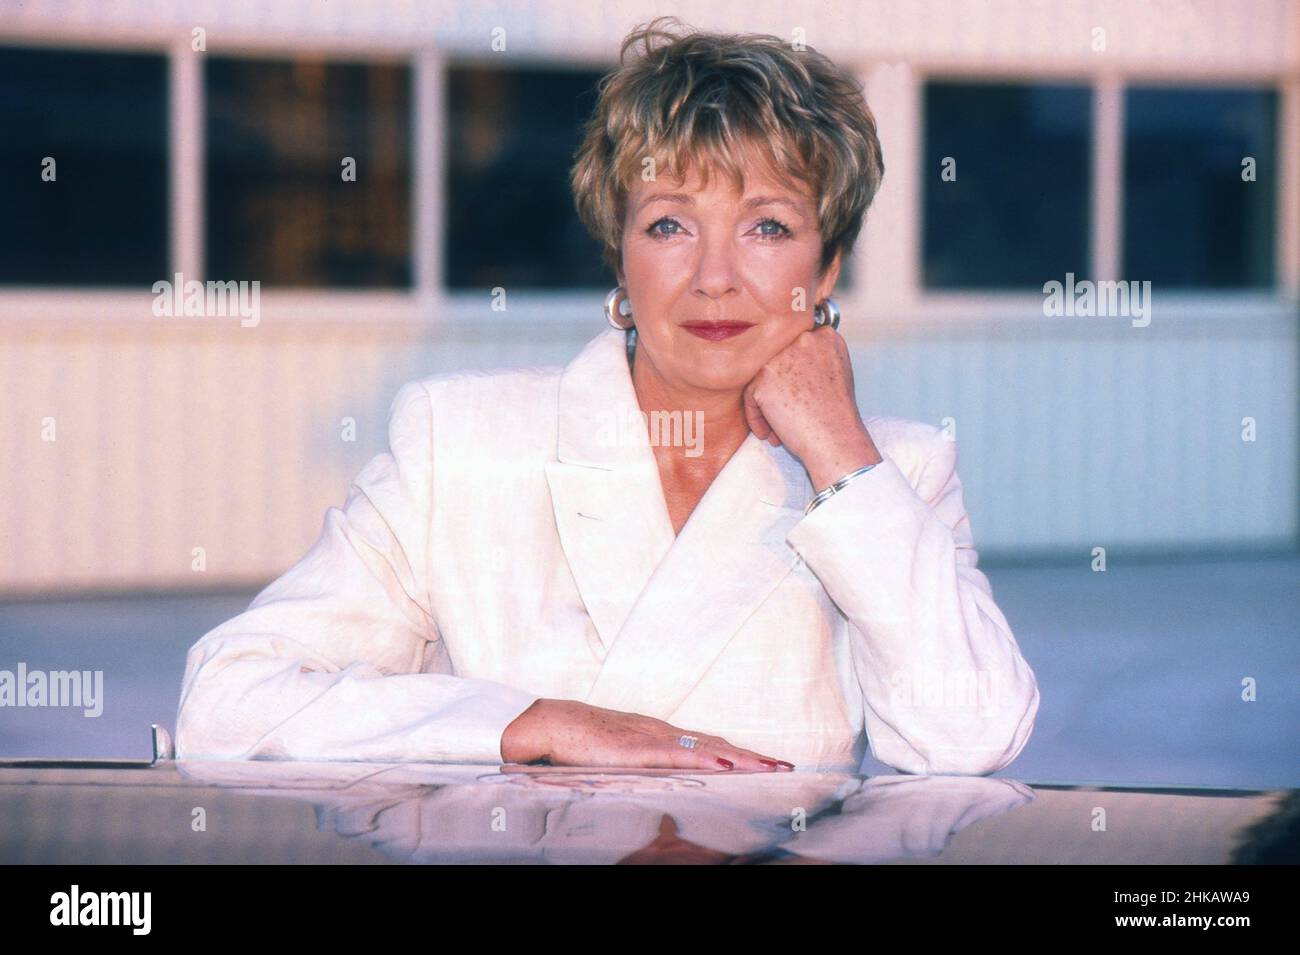 Gila von Weitershausen, deutsche Schauspielerin, in der Folge 'Kalte Herzen' der Krimiserie 'Tatort', Deutschland 1999. Stock Photo